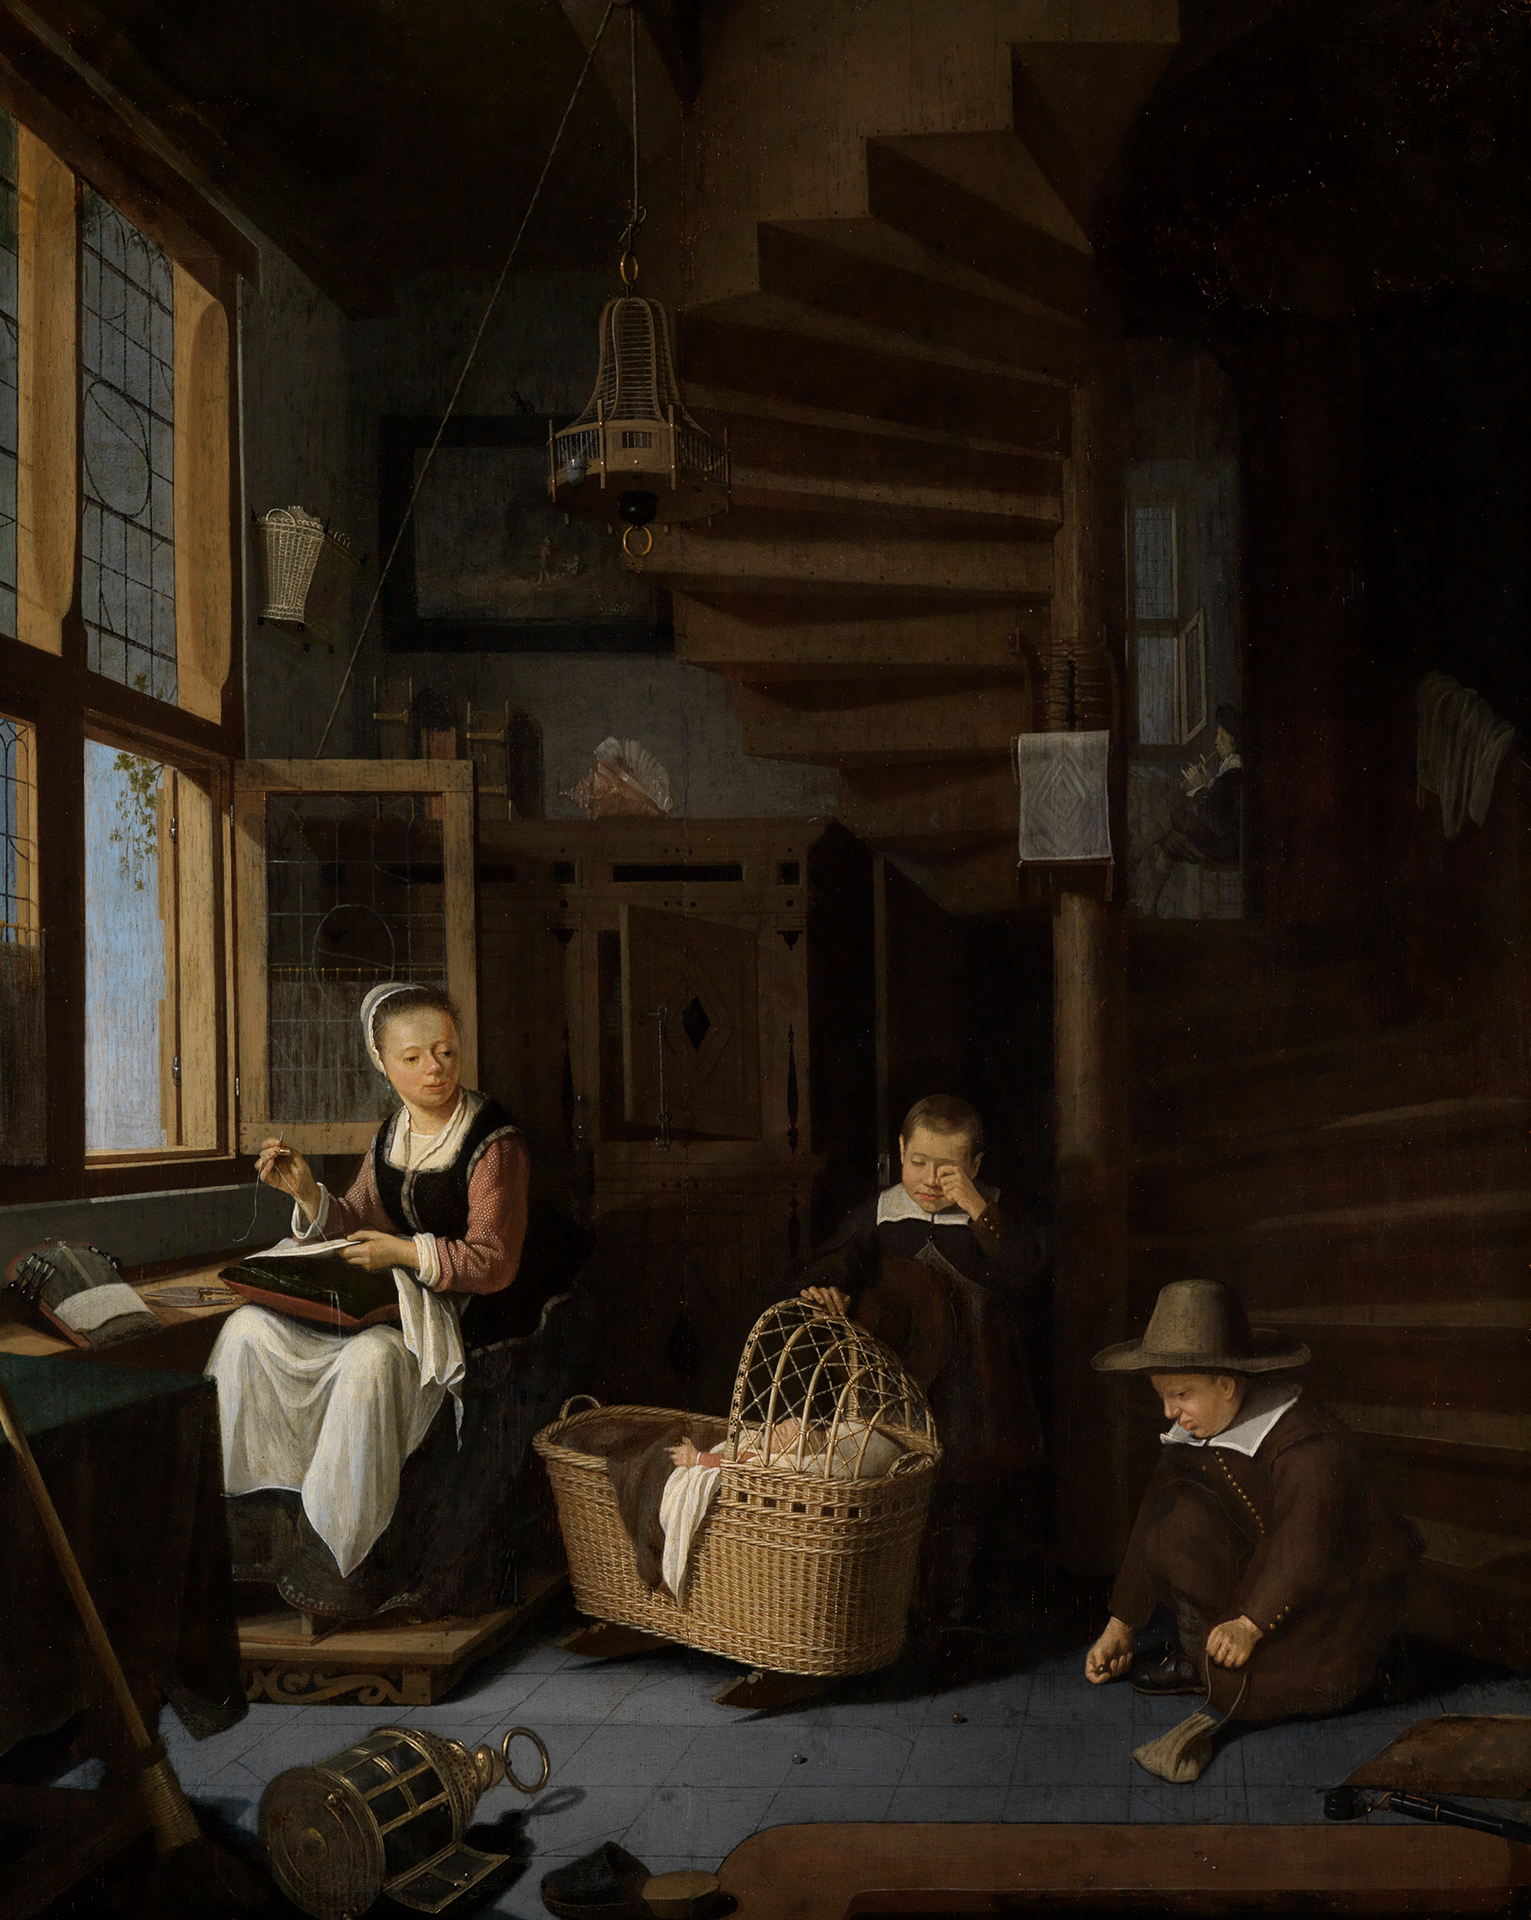 In einem engen Zimmer eine junge Frau am Fenster beim Sticken. Neben ihr zwei Murmel spielende Kinder um eine Korbwiege. Eine Wendeltreppe aus Holz führt nach oben.